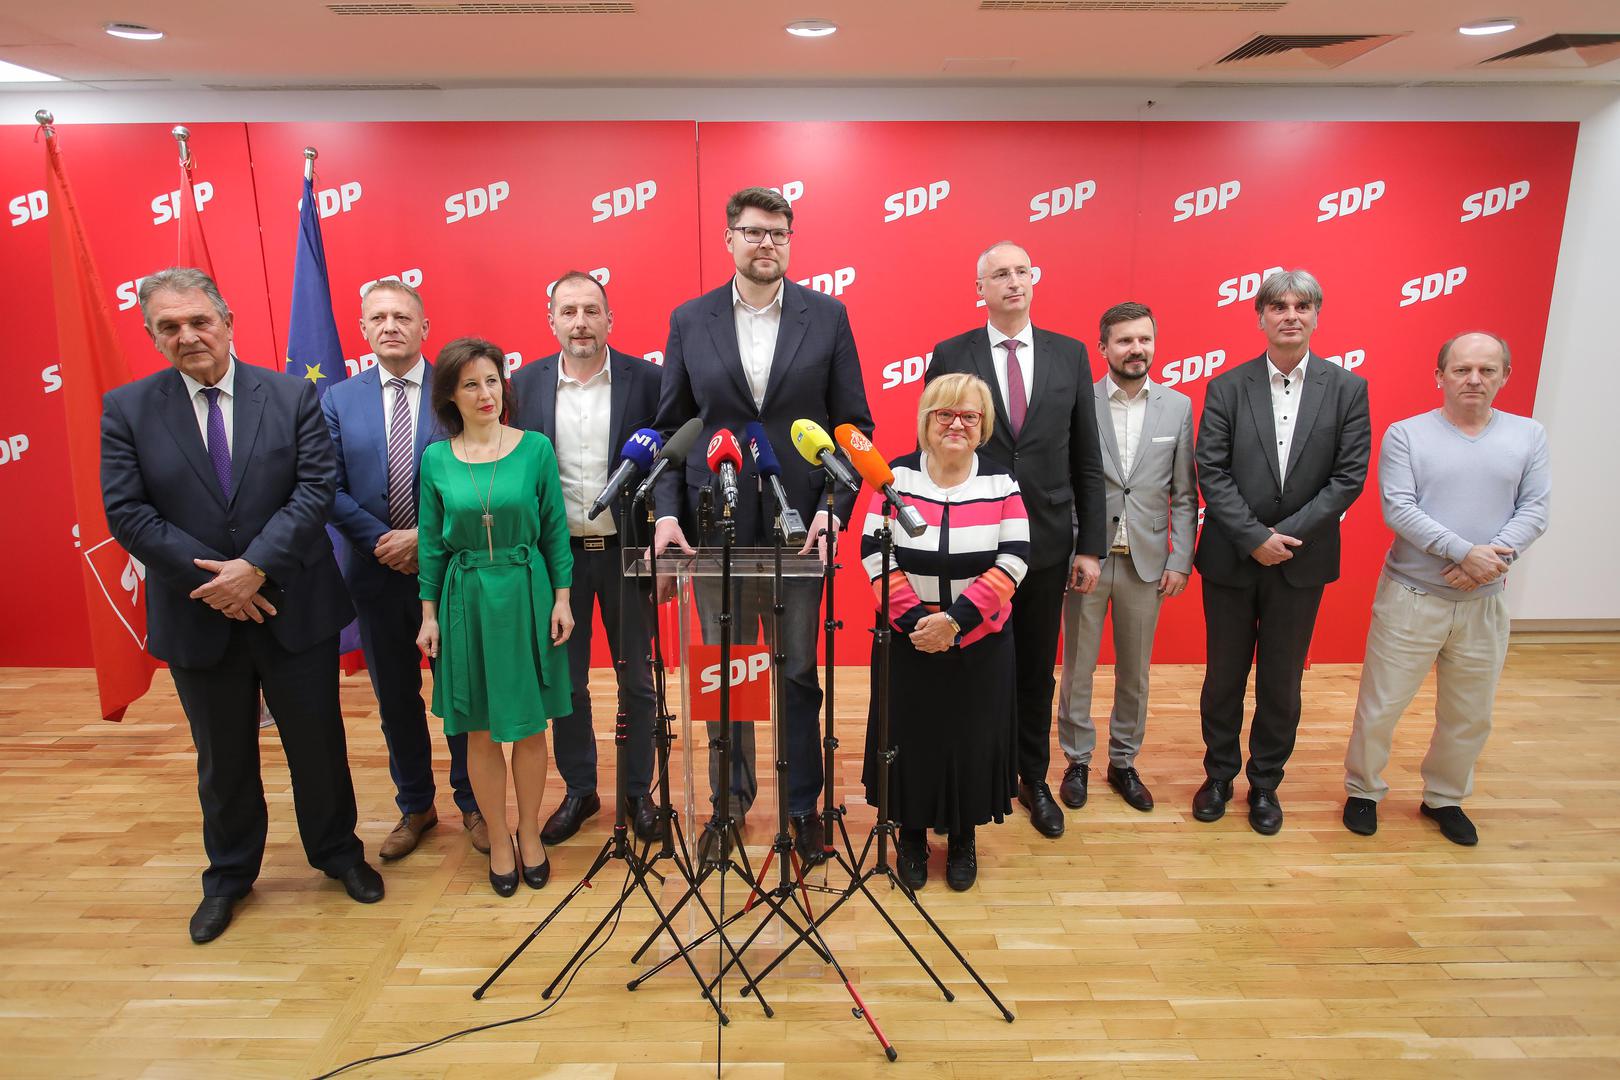 Deset političkih stranka ljevice i centra postignulo je dogovor o zajedničkom izlasku na predstojeće parlamentarne izbore, o čemu je, nakon sastanka održanog u središnjici SDP-a u utorak navečer, izvijestio čelnik te stranke Peđa Grbin rekavši da je riječ o koaliciji Za bolju Hrvatsku.